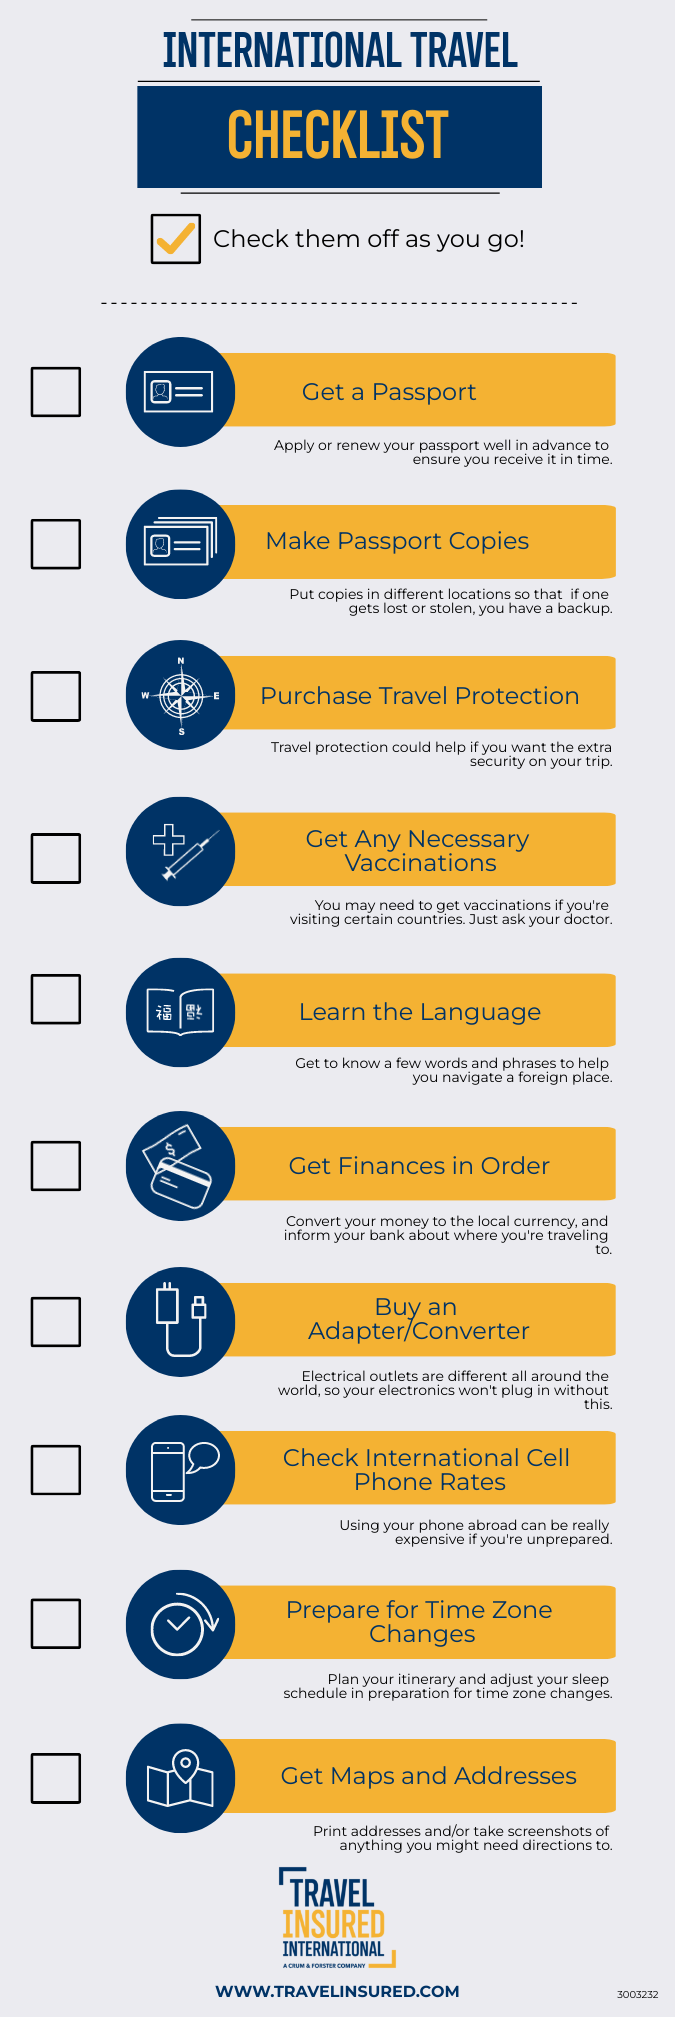 International Travel Checklist infographic